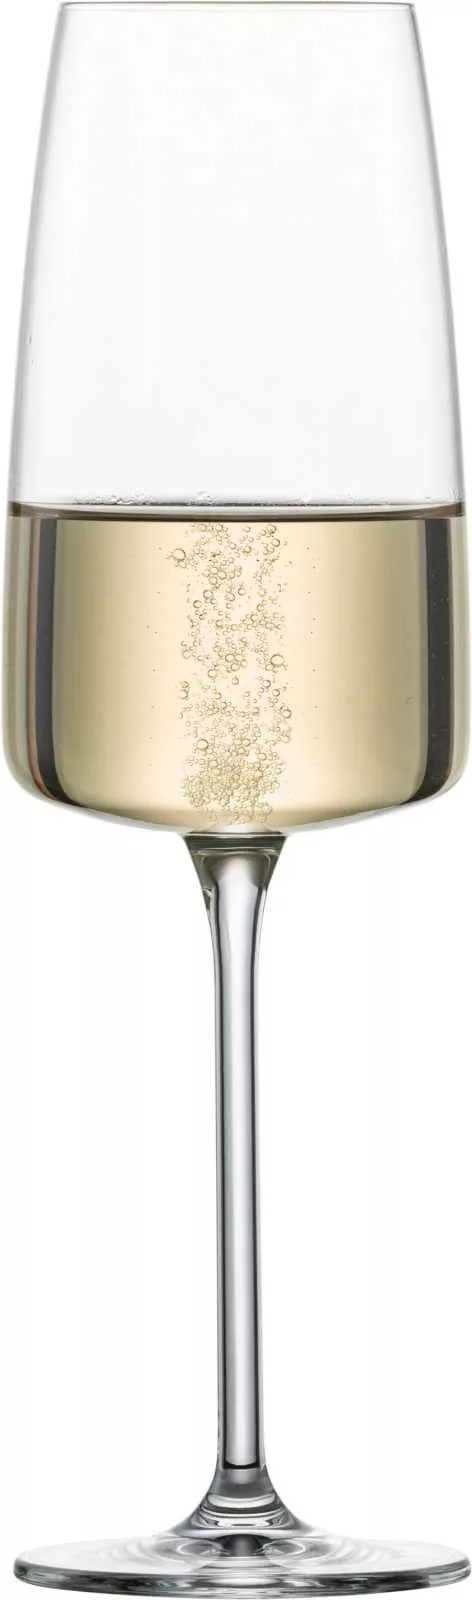 Бокал для игристого вина Schott Zwiesel Sensa Light & Fresh Sparkling, объем 0,388 л (122430) - Фото nav 2